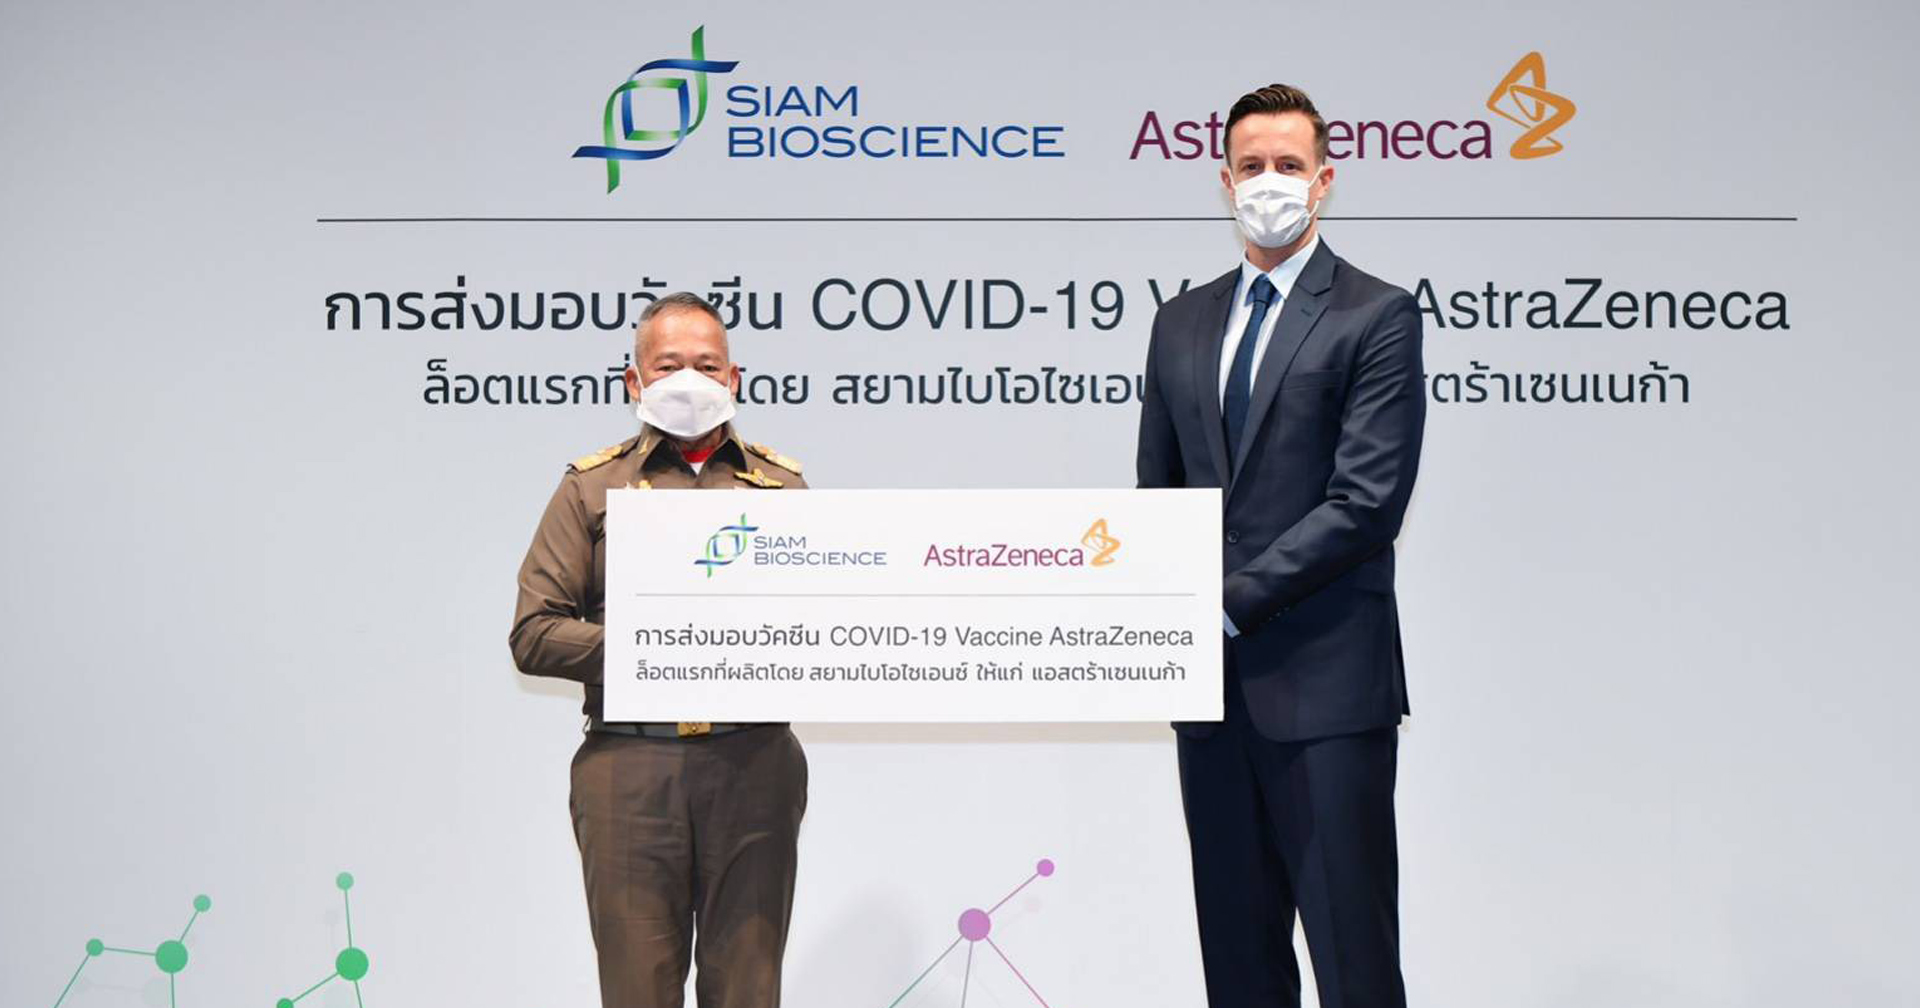 ‘สยามไบโอไซเอนซ์’ ส่งมอบวัคซีนที่ผลิตเองในไทยให้กับ ‘แอสตร้าเซนเนก้า’ แล้ว